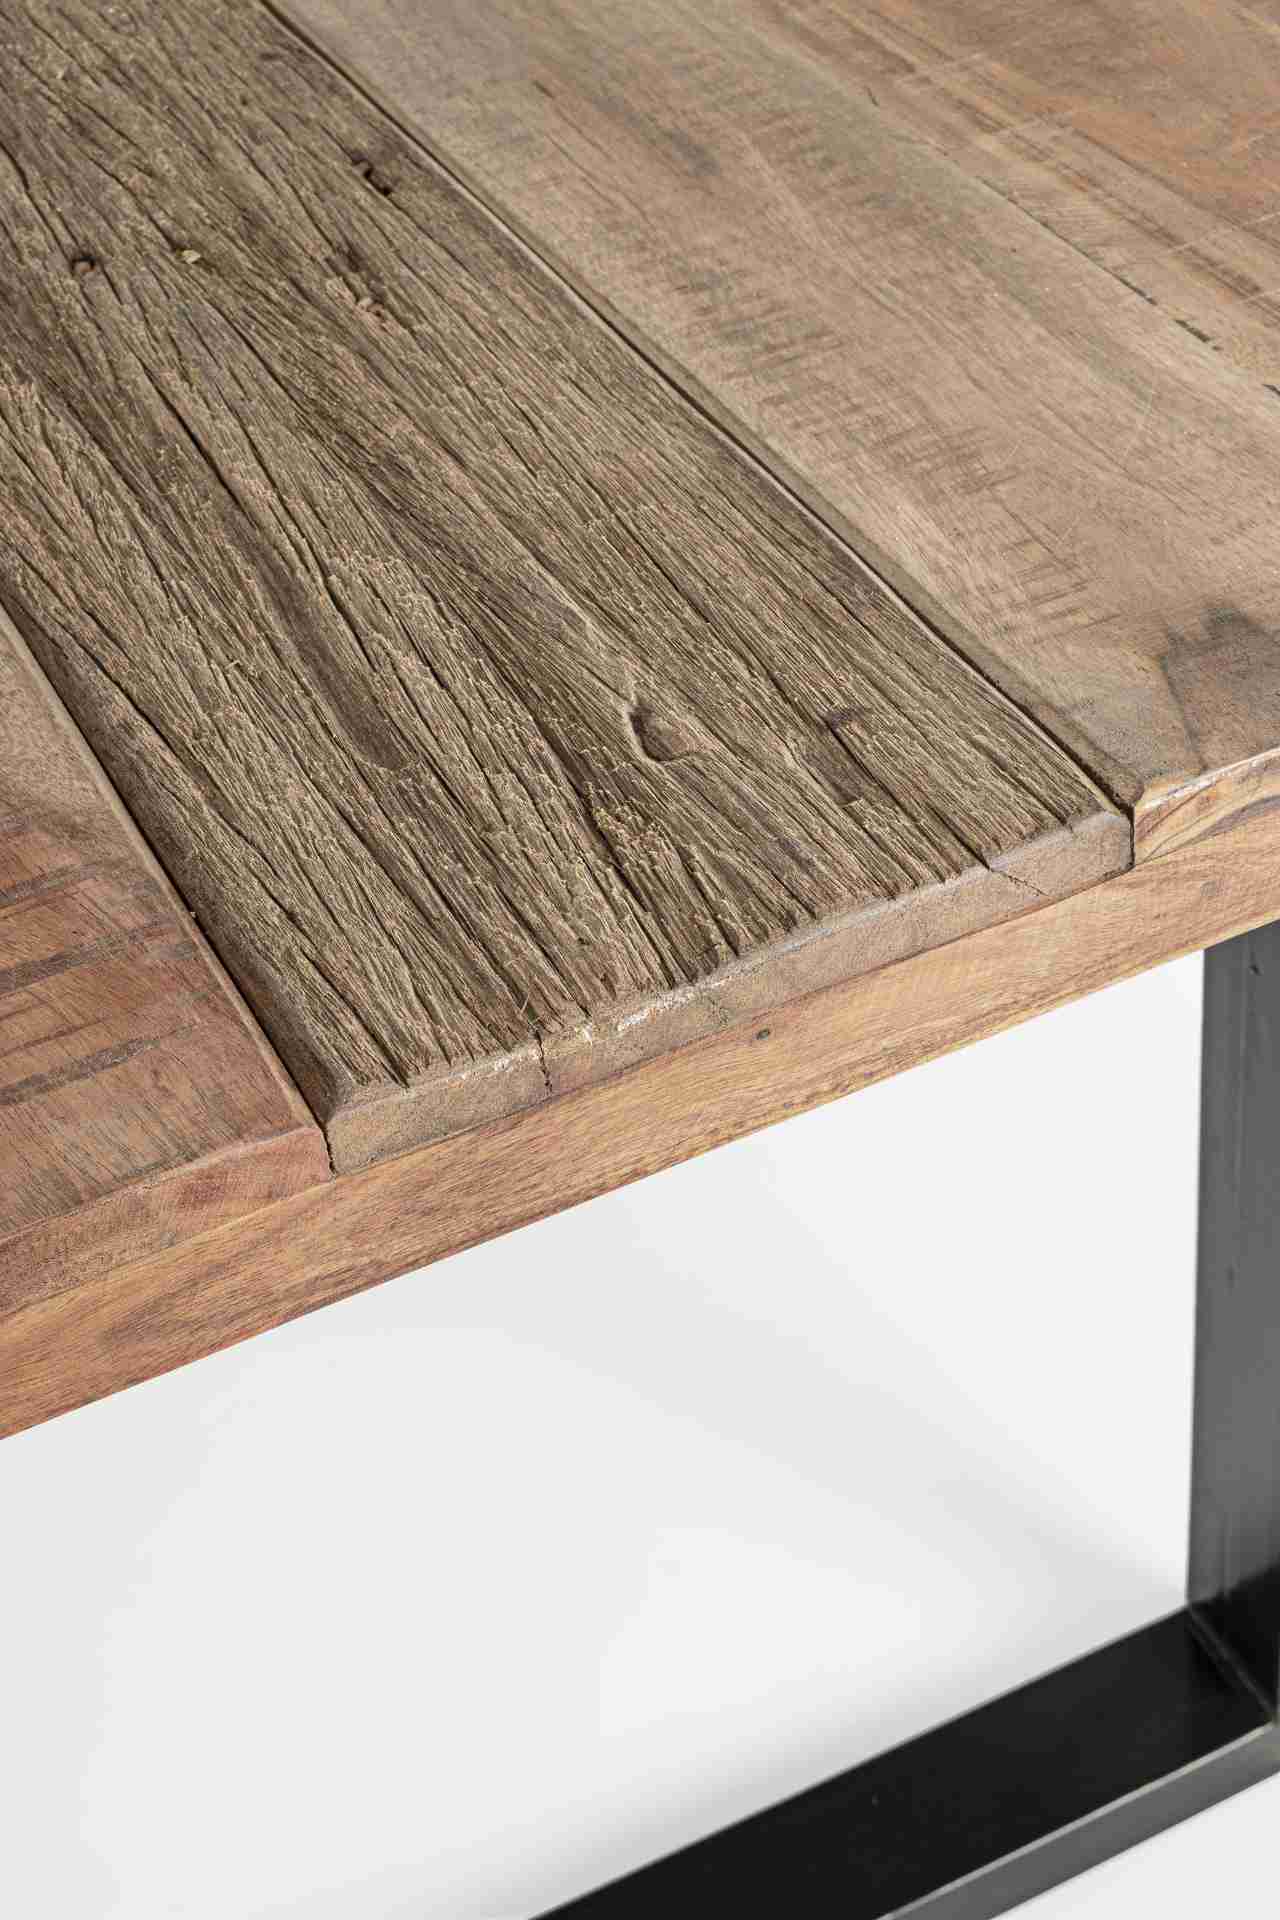 Der Esstisch Nottingham überzeugt mit seinem moderndem Design. Gefertigt wurde er aus Akazienholz, welches einen natürlichen Farbton besitzt. Das Gestell des Tisches ist aus Metall und ist in eine schwarze Farbe. Der Tisch besitzt eine Breite von 180 cm.